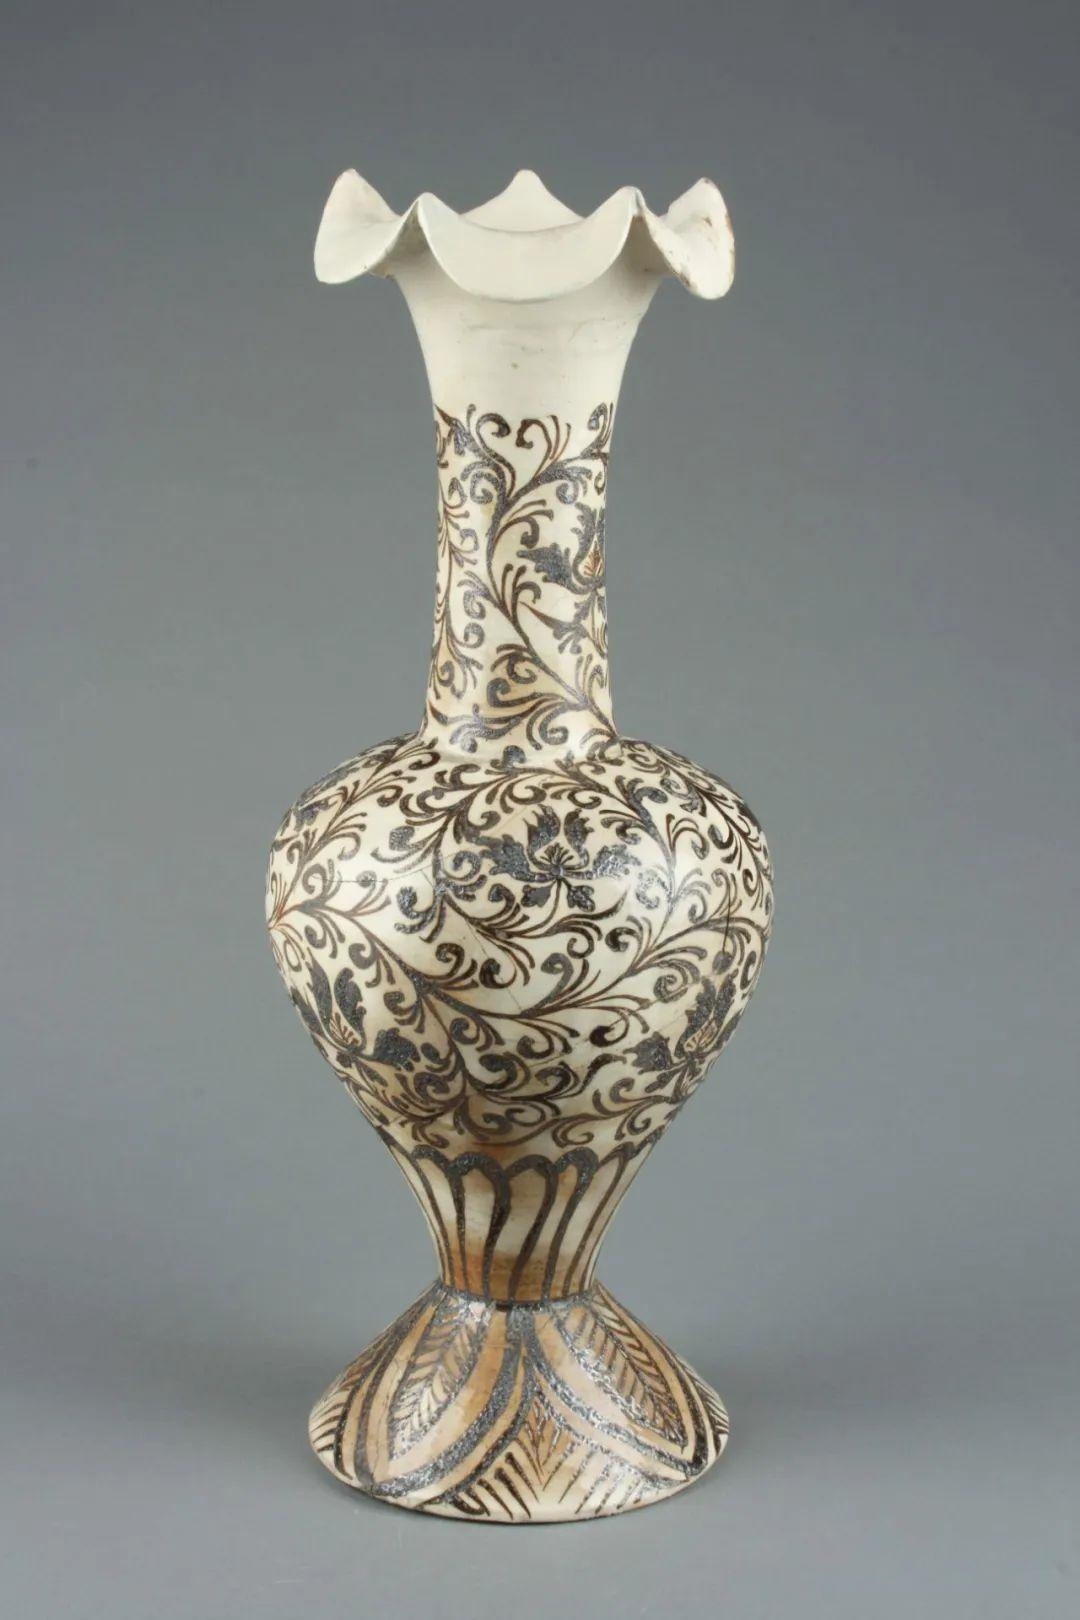 磁州窑博物馆:领略中国古代陶瓷的艺术魅力